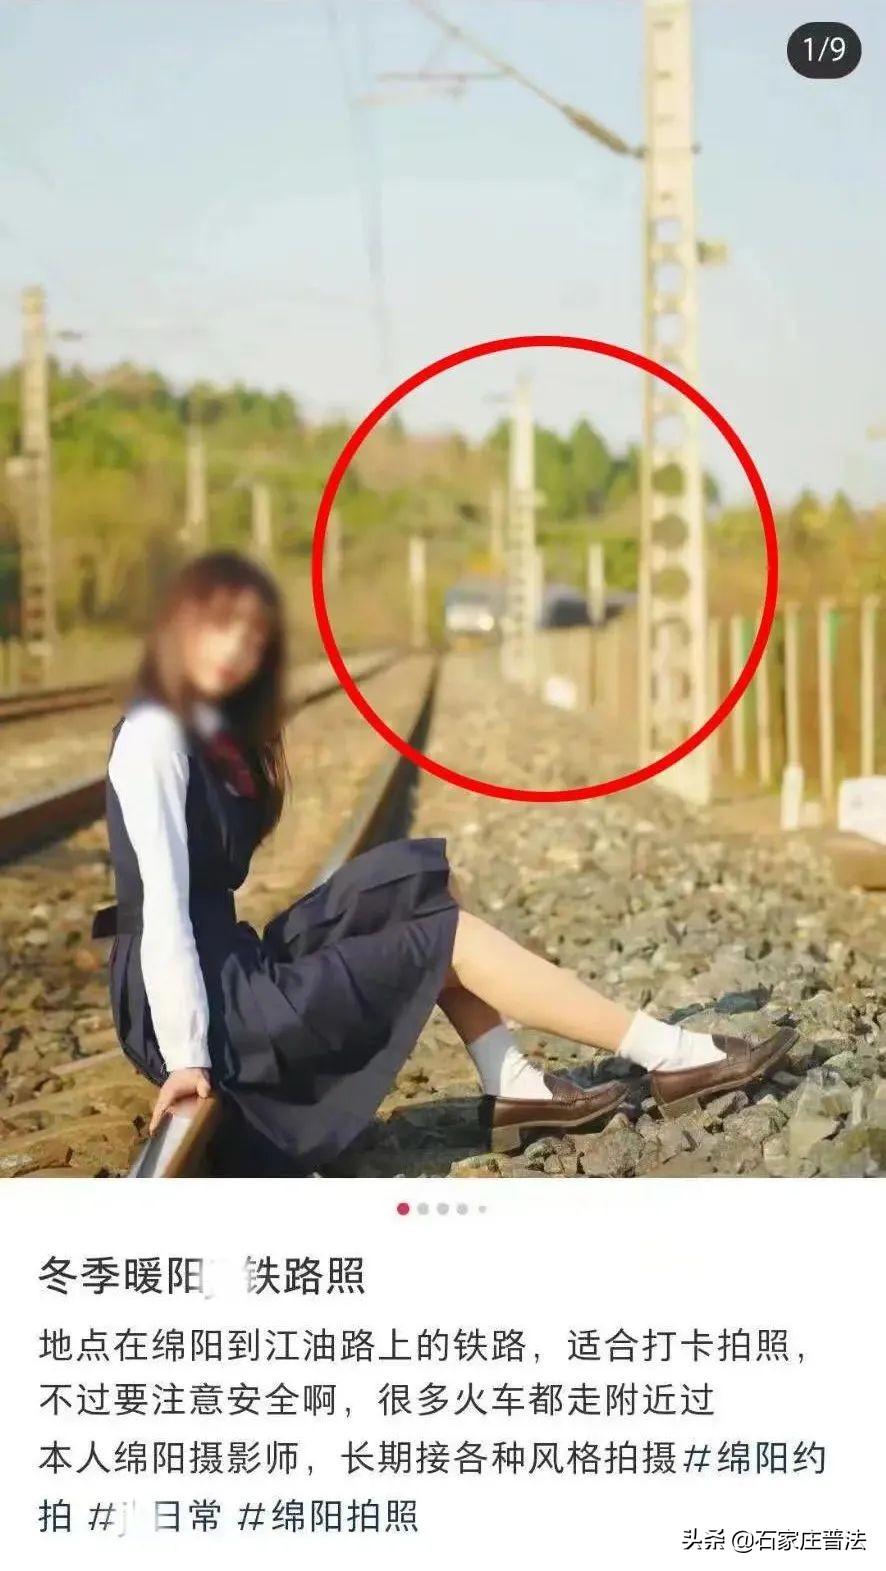 【热点】身后火车飞驰而来，一男一女仍淡定拍照？